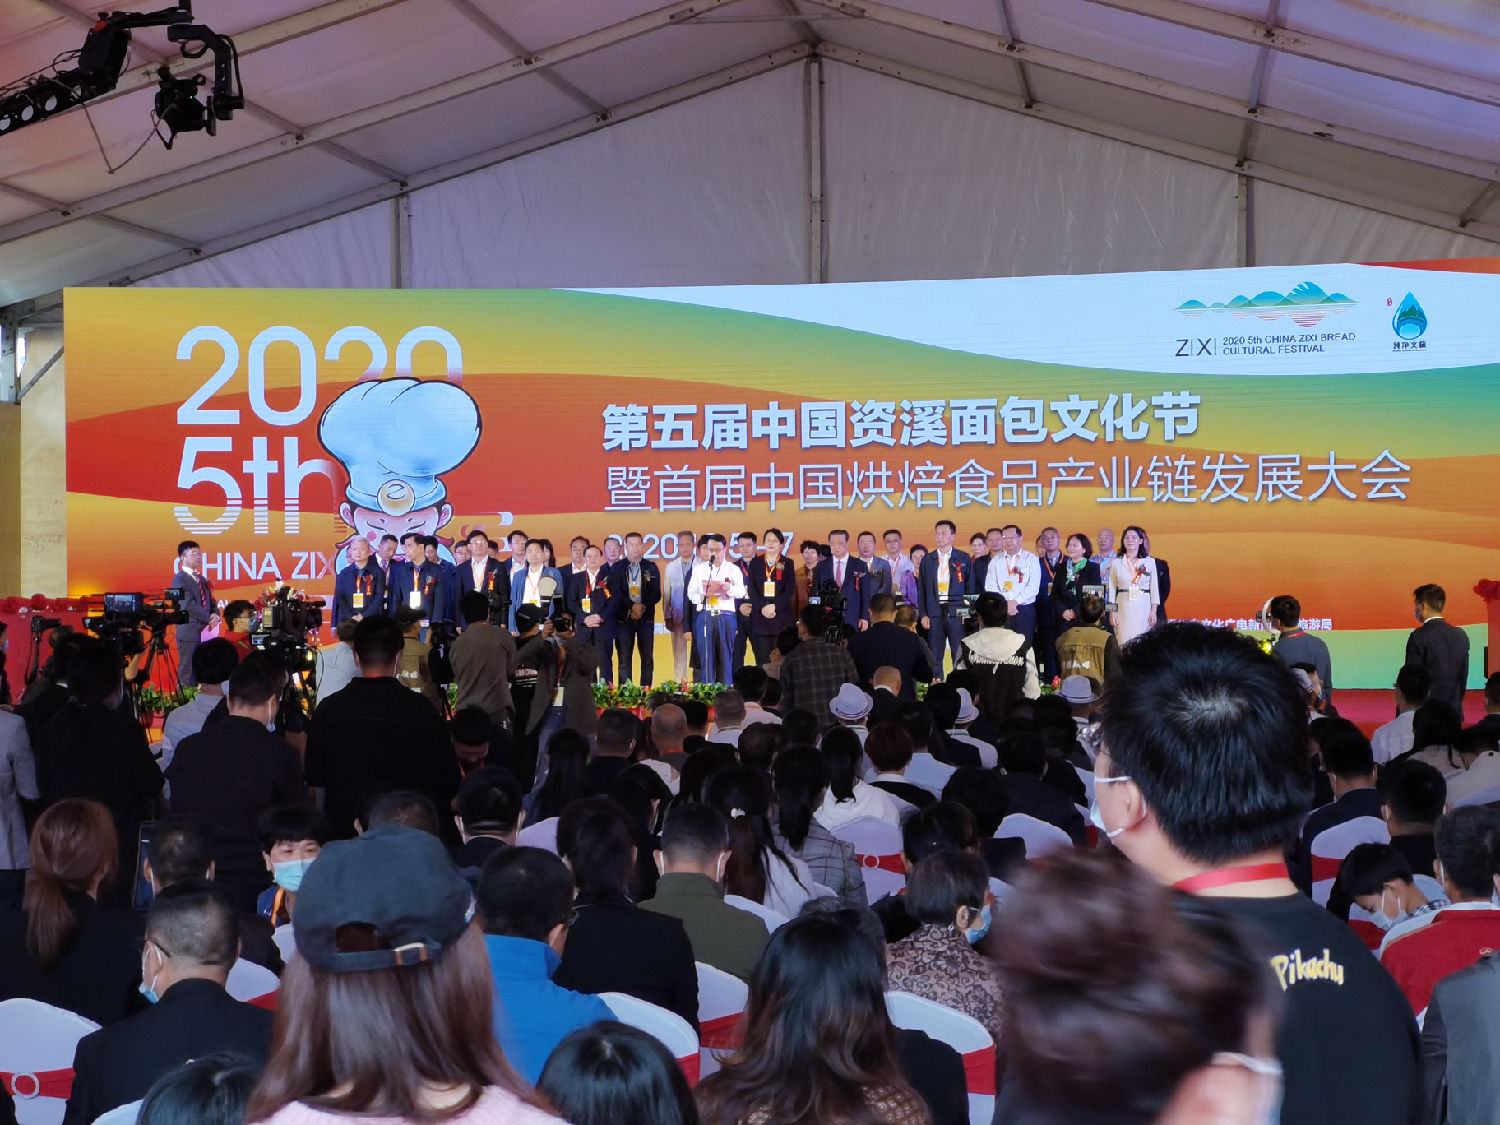 賽思達受邀參展2020第五屆中國資溪面包文化節